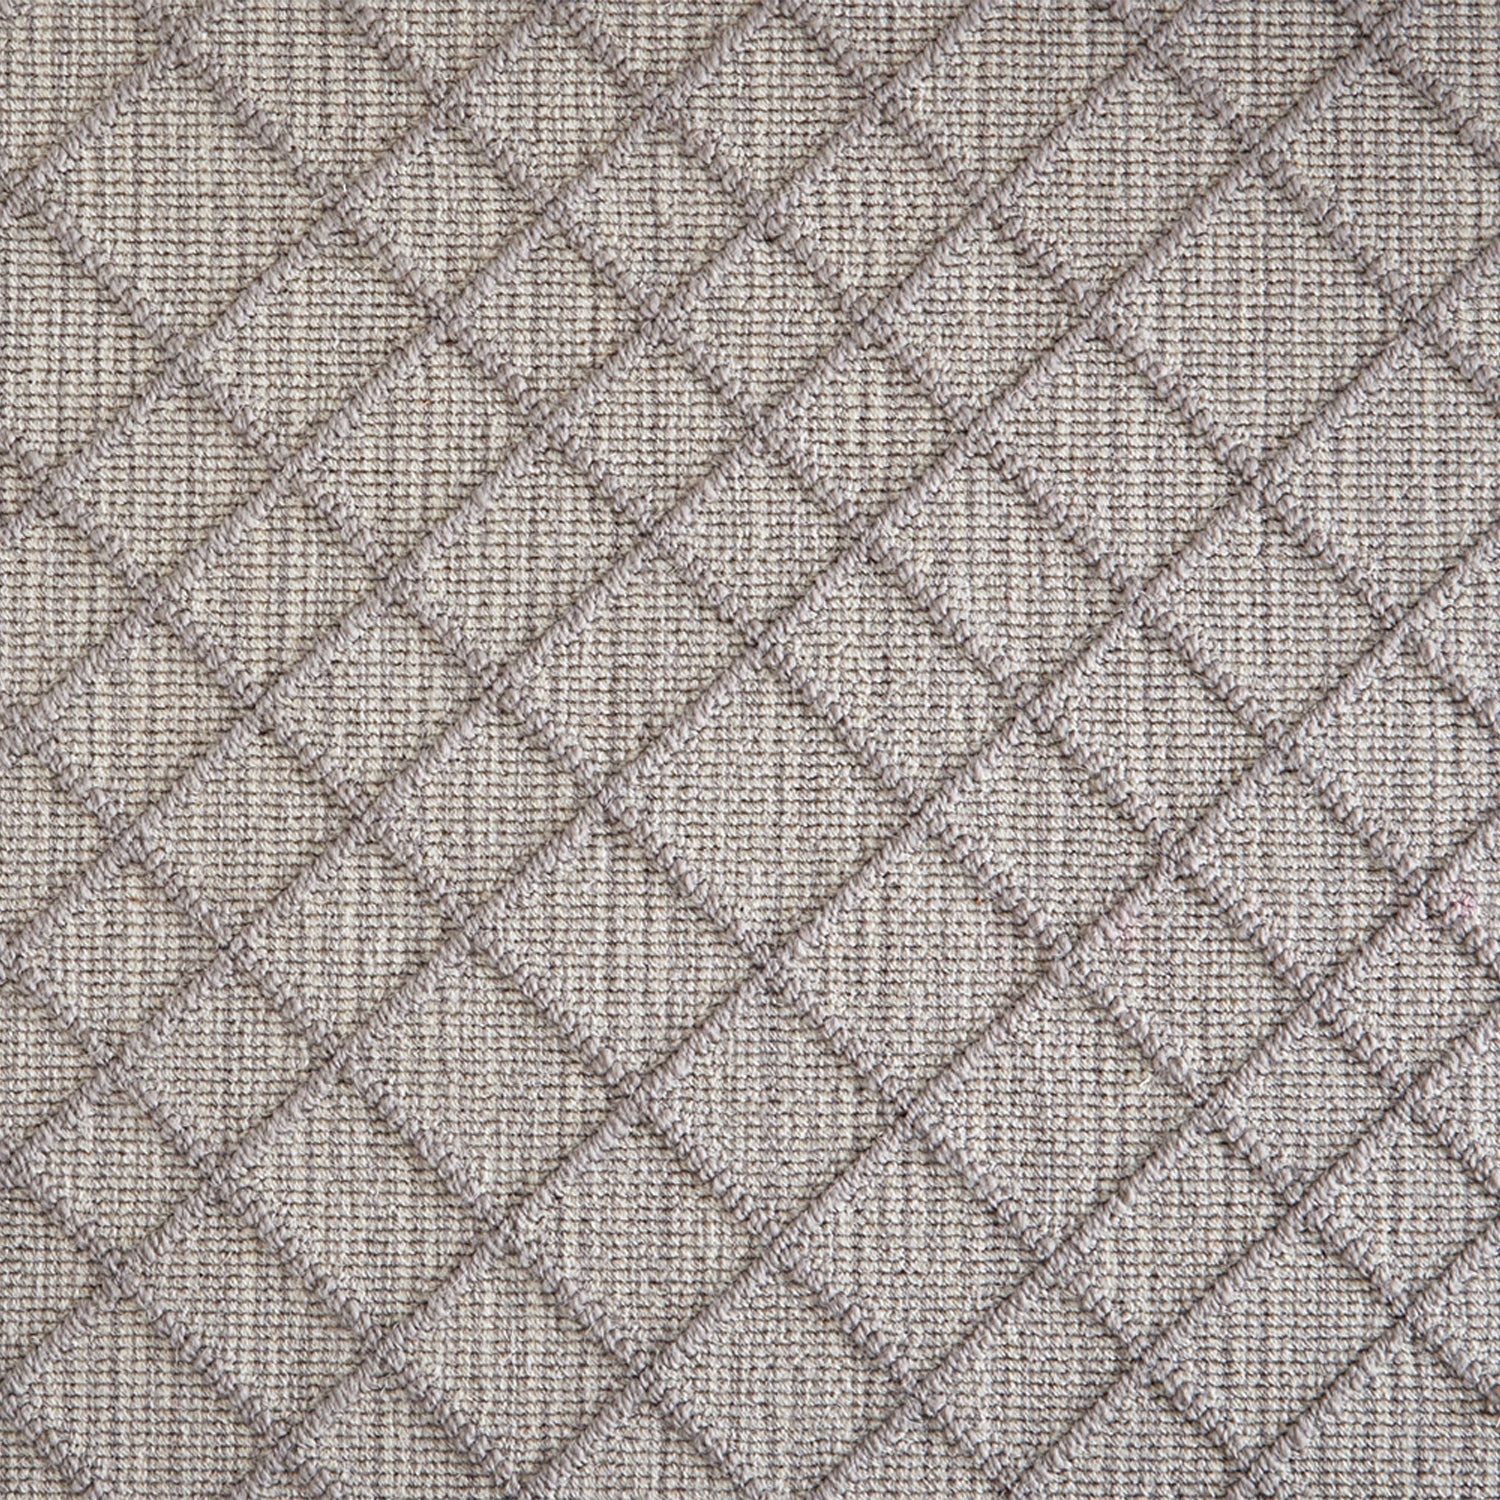 Wool-blend broadloom carpet swatch in a dimensional lattice print in gray on a mottled gray field.